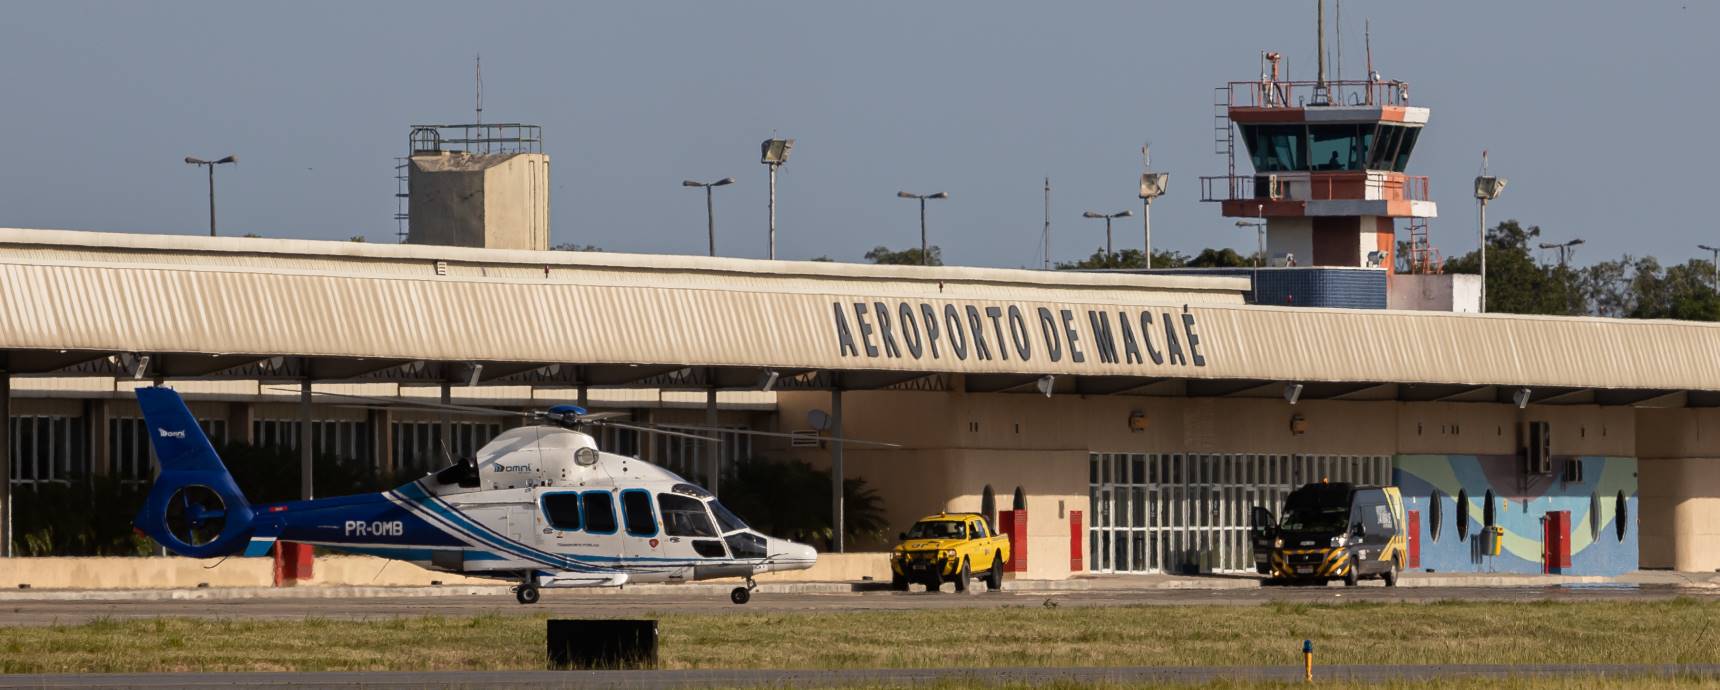 Aeroporto de Macaé registra recorde de movimentação nas operações de offshore